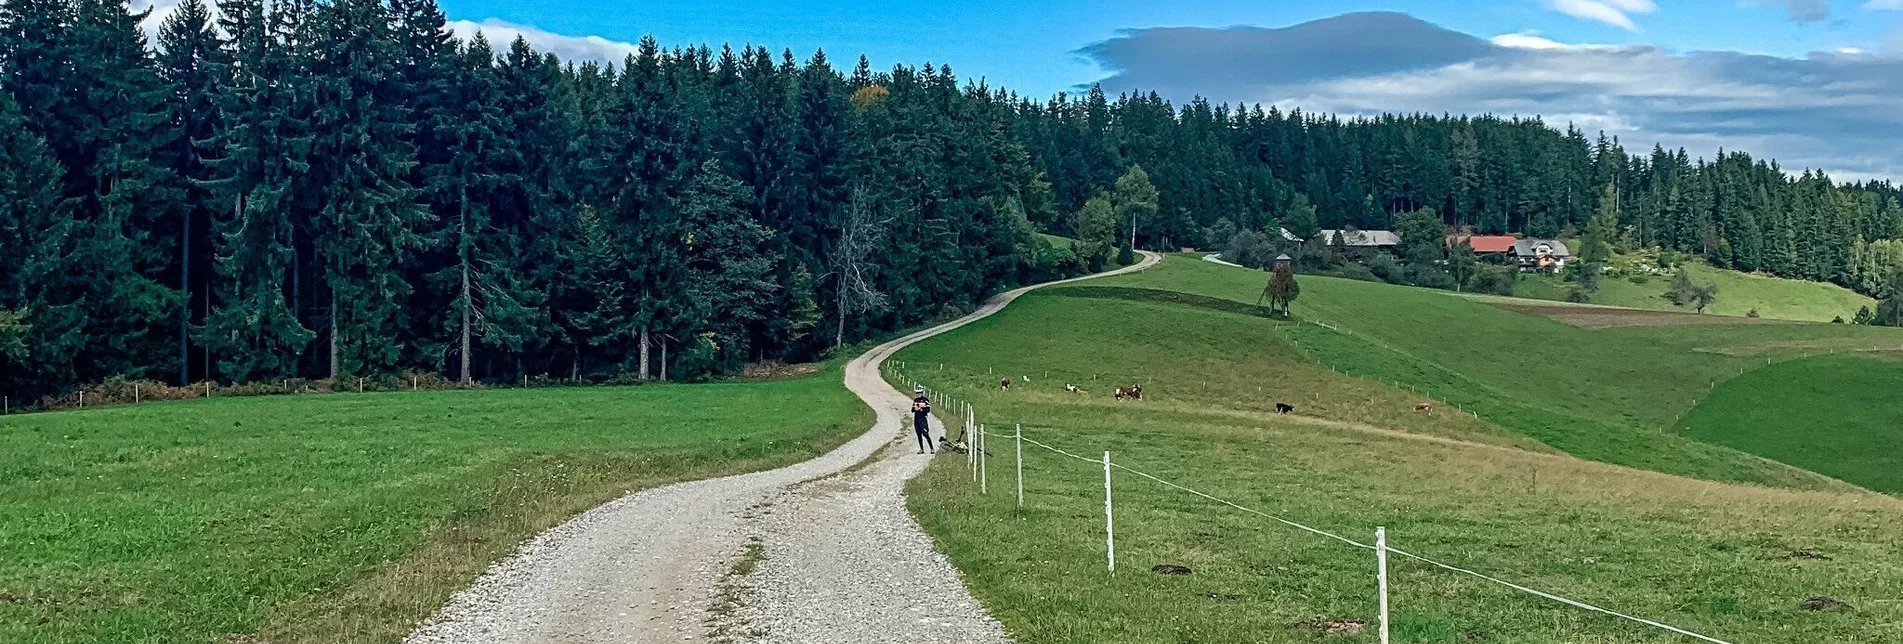 Mountain Biking Odernik Tour - the small Nandl with a big panorama - Touren-Impression #1 | © Südsteiermark